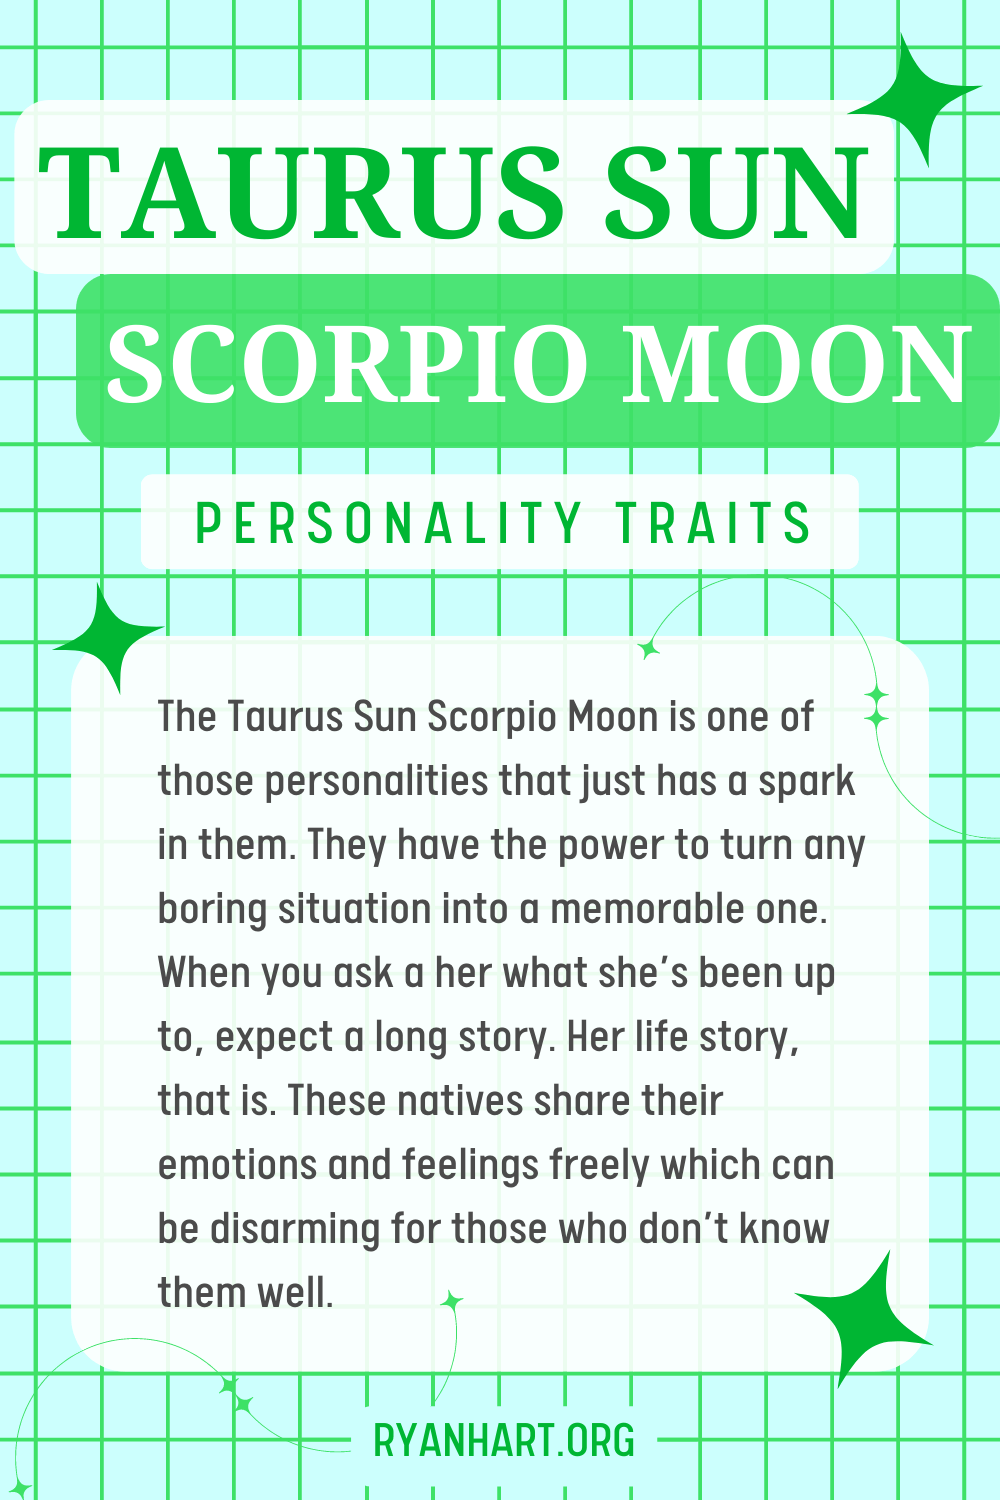 Taurus Sun Scorpio Moon Description